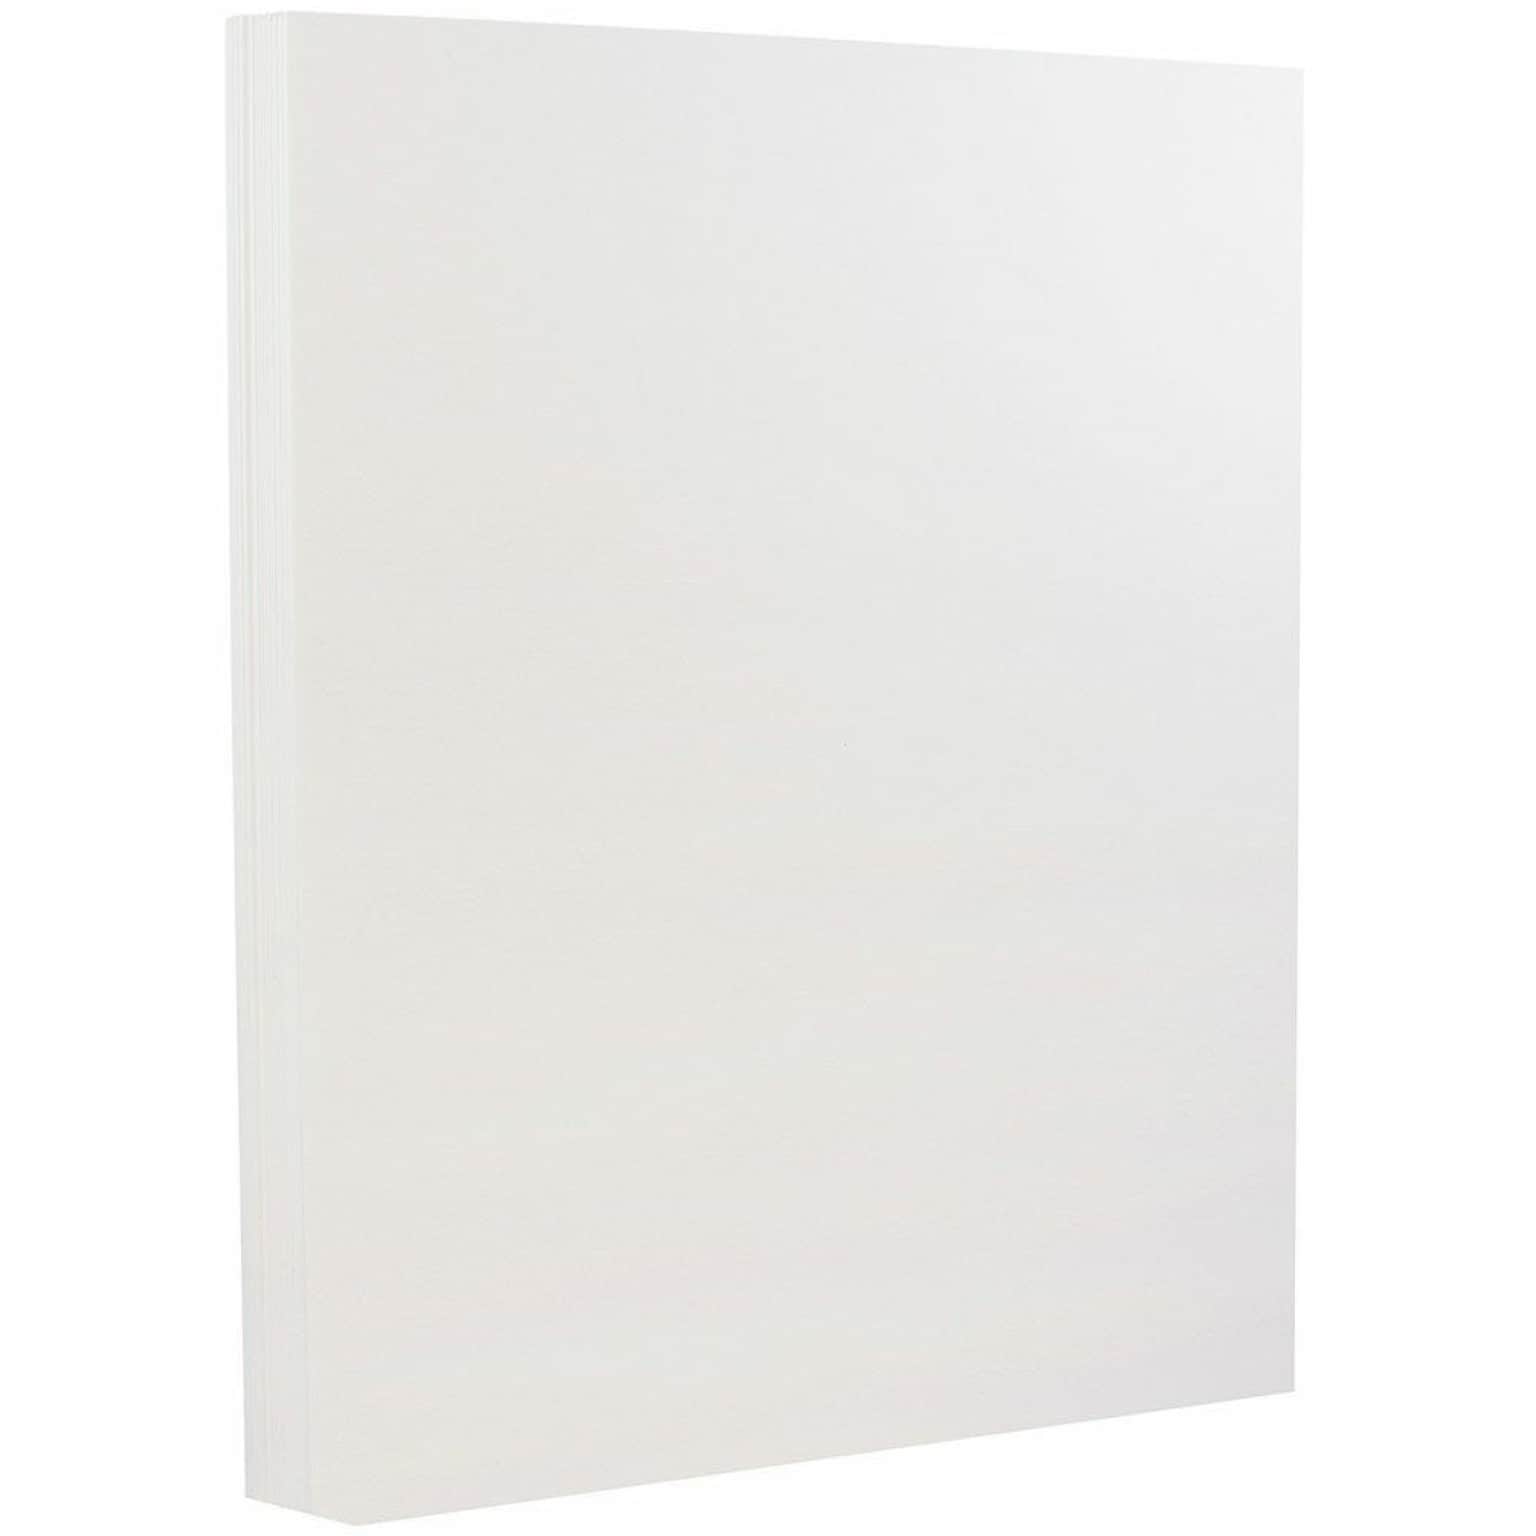 JAM PAPER 8.5 x 11 Strathmore Cardstock, 88lb, Bright White Wove, 100/pack  (191267G)